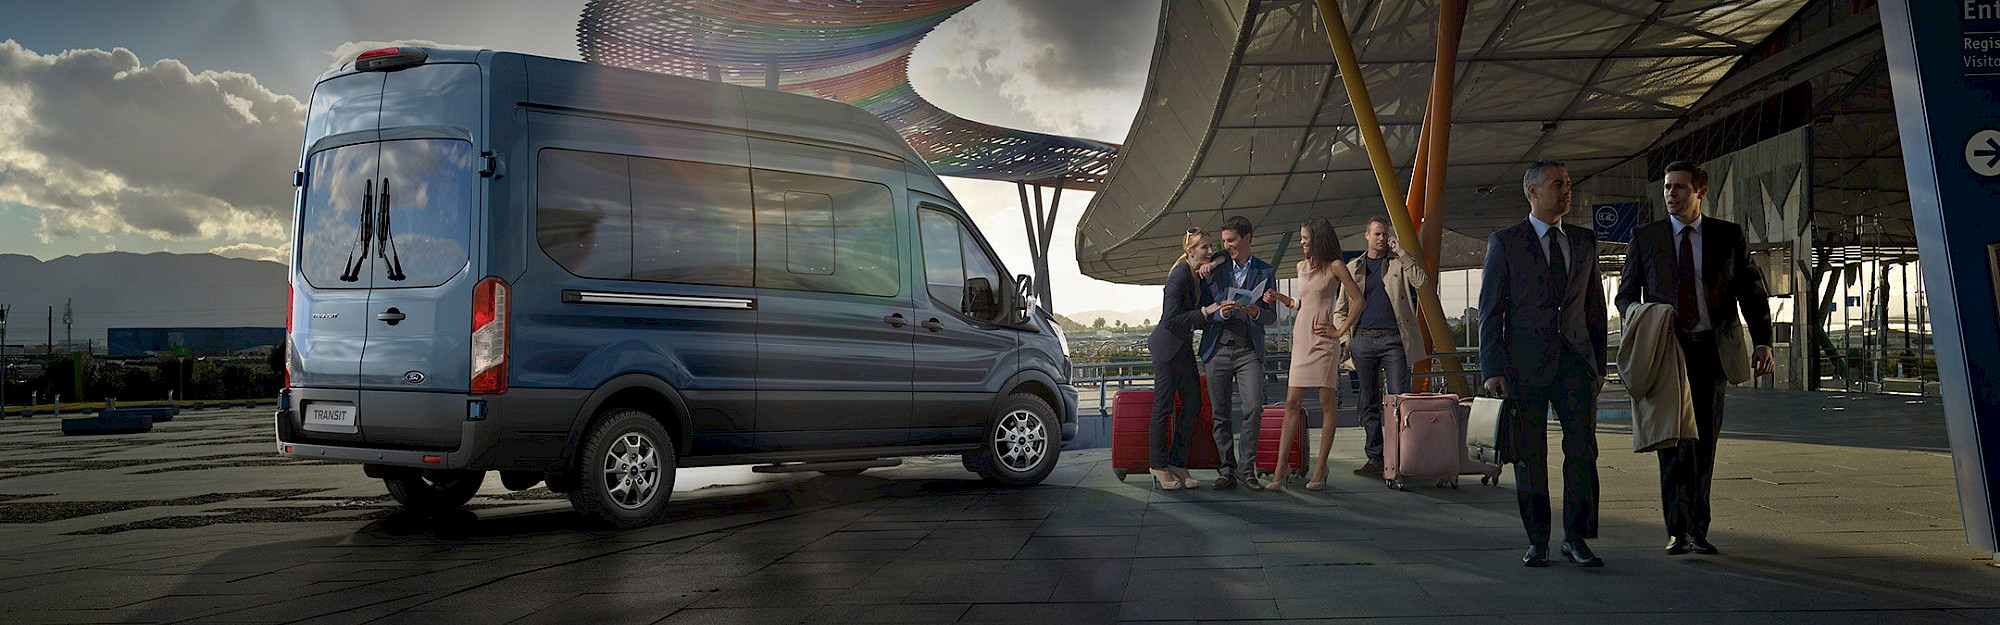 Utasok várakoznak egy Ford Transit Minibusz mellett a repülőtéren